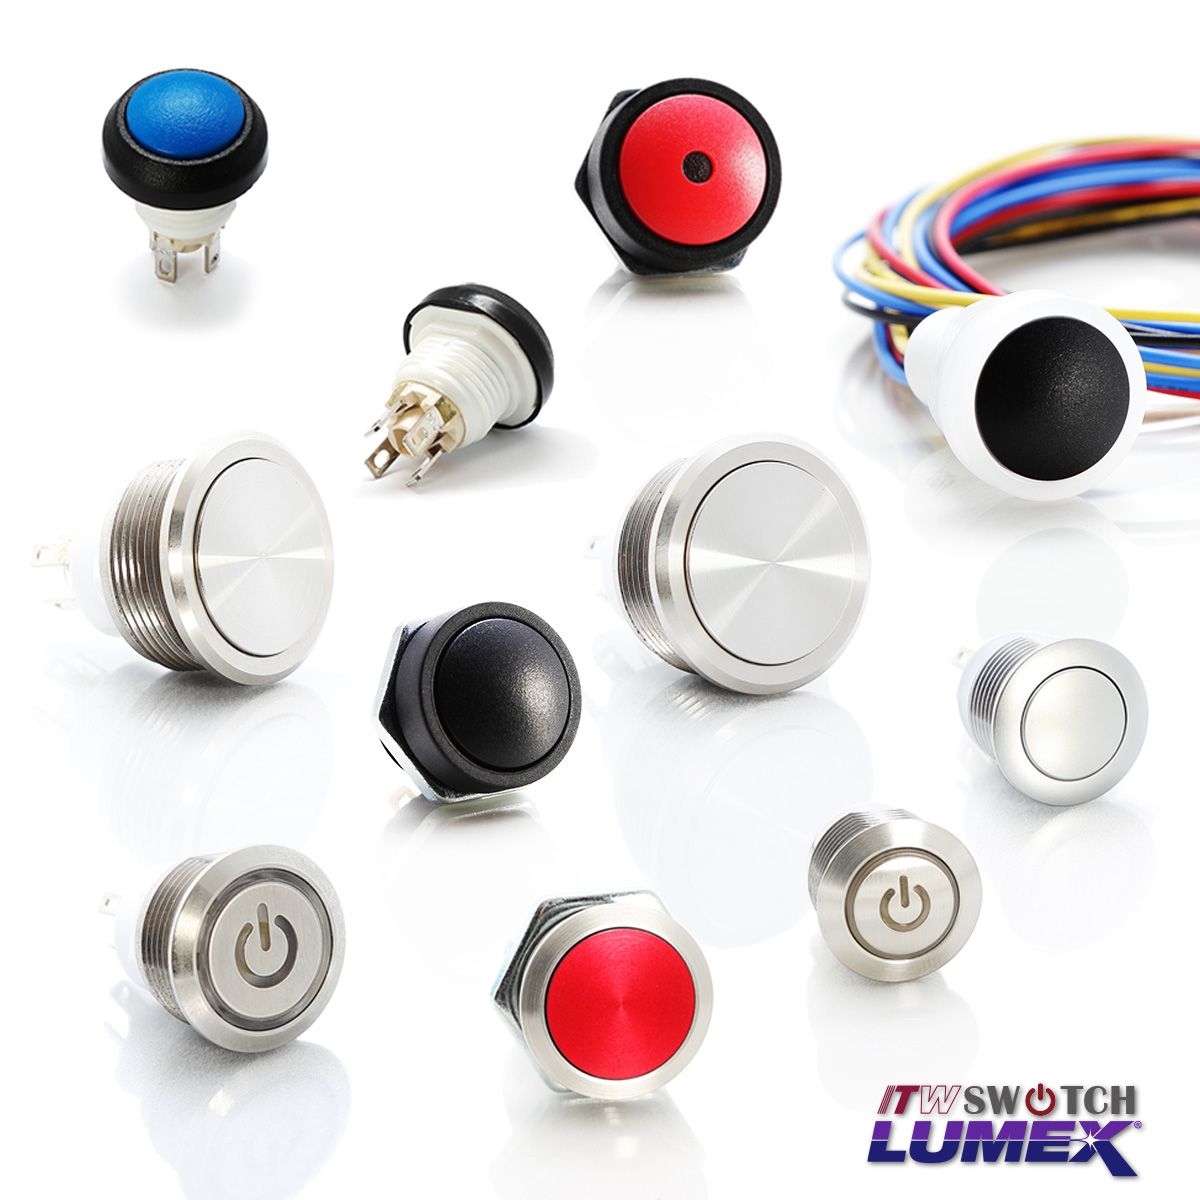 ITW Lumex SwitchProporciona interruptores de acción rápida con una alta clasificación de corriente de 5 amperios.